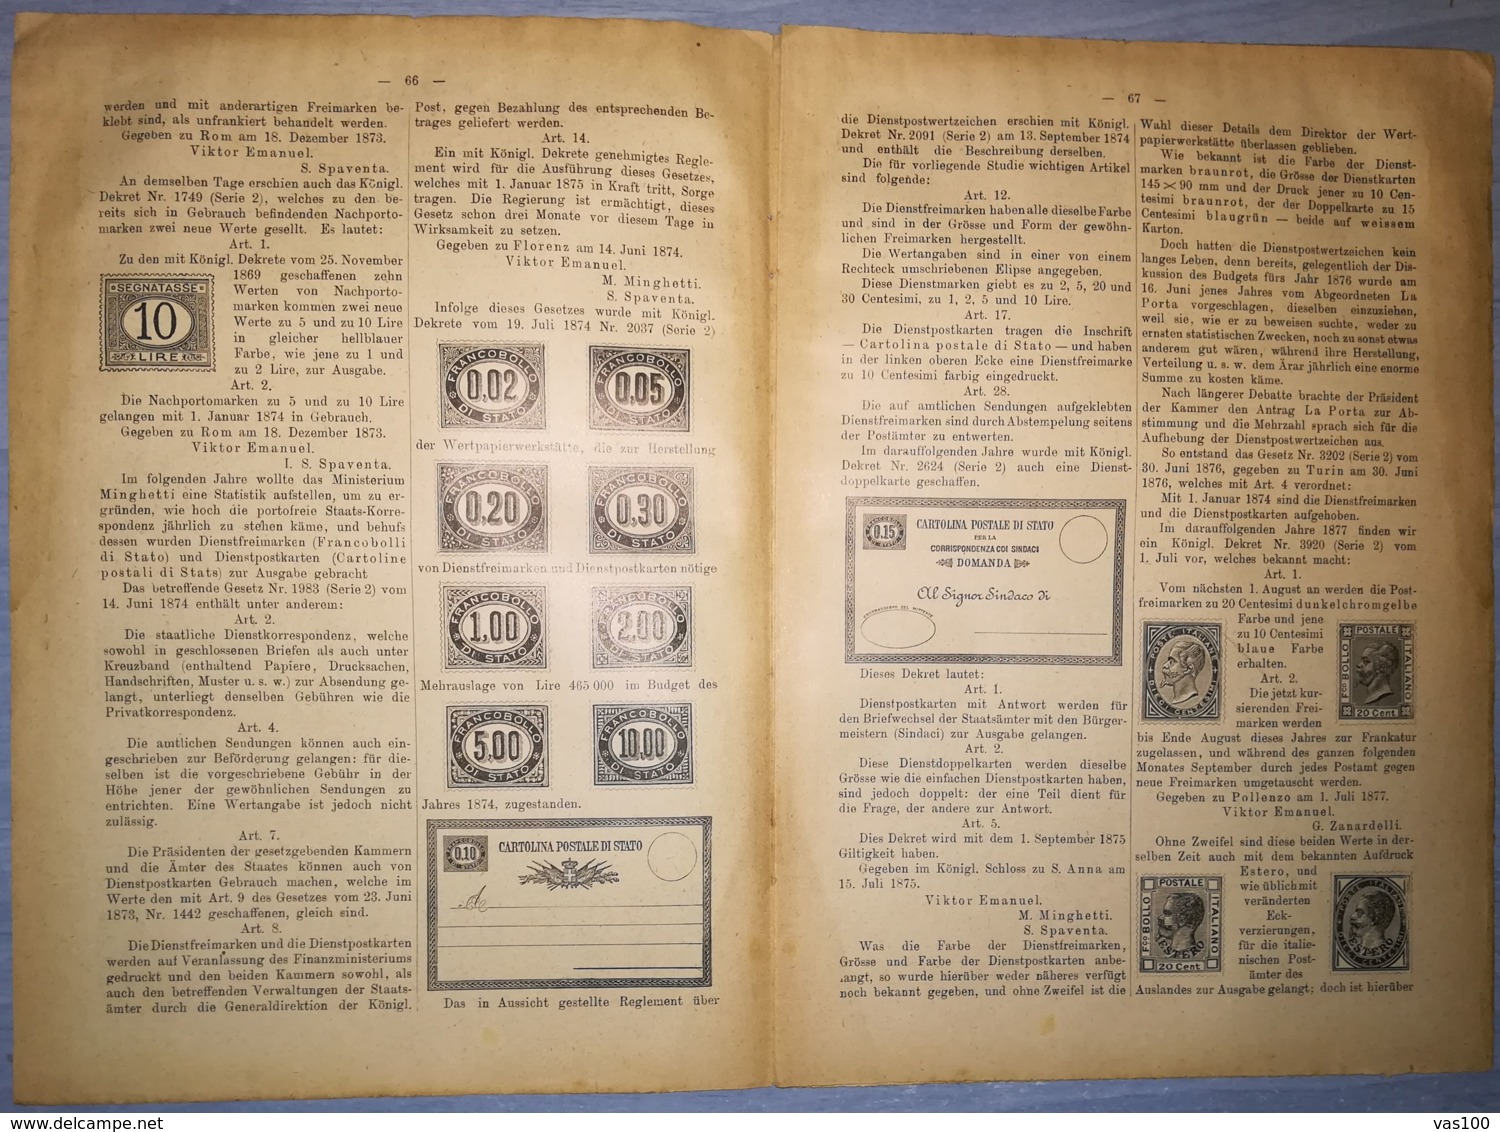 ILLUSTRATED STAMPS JOURNAL- ILLUSTRIERTES BRIEFMARKEN JOURNAL MAGAZINE SUPPLEMENT, LEIPZIG, NR 9, 1895, GERMANY - German (until 1940)